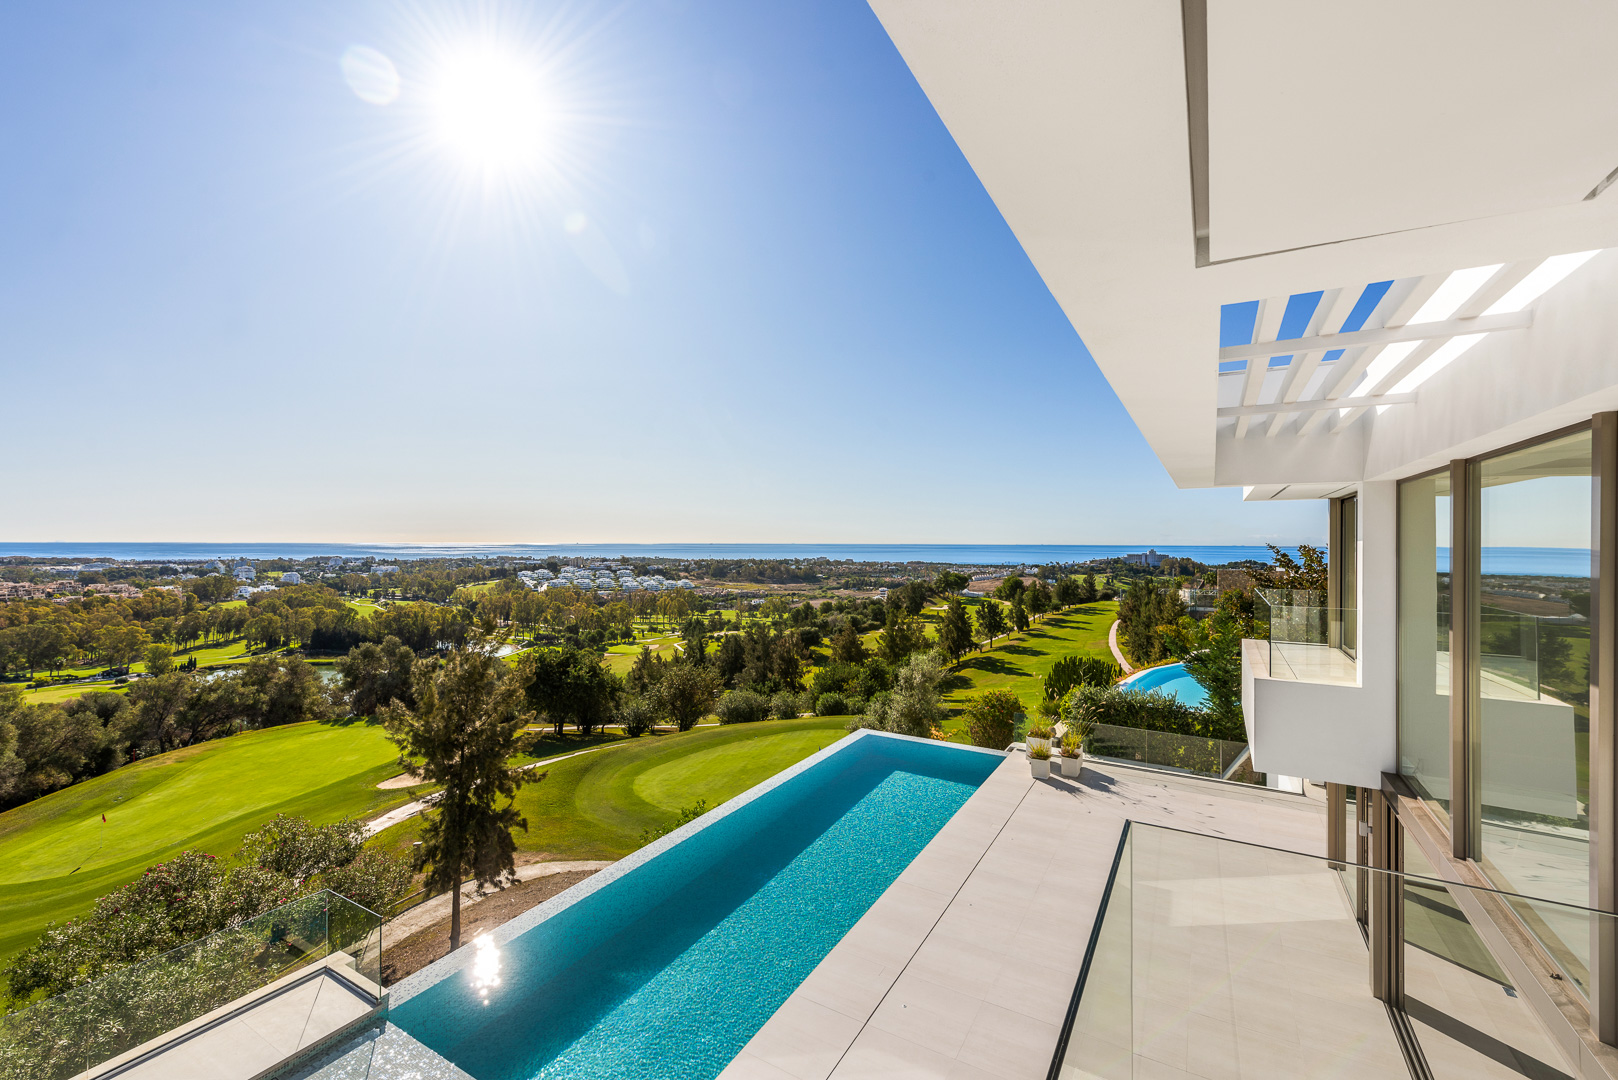 Swedish buyers eye Marbella luxury real estate as skies reopen